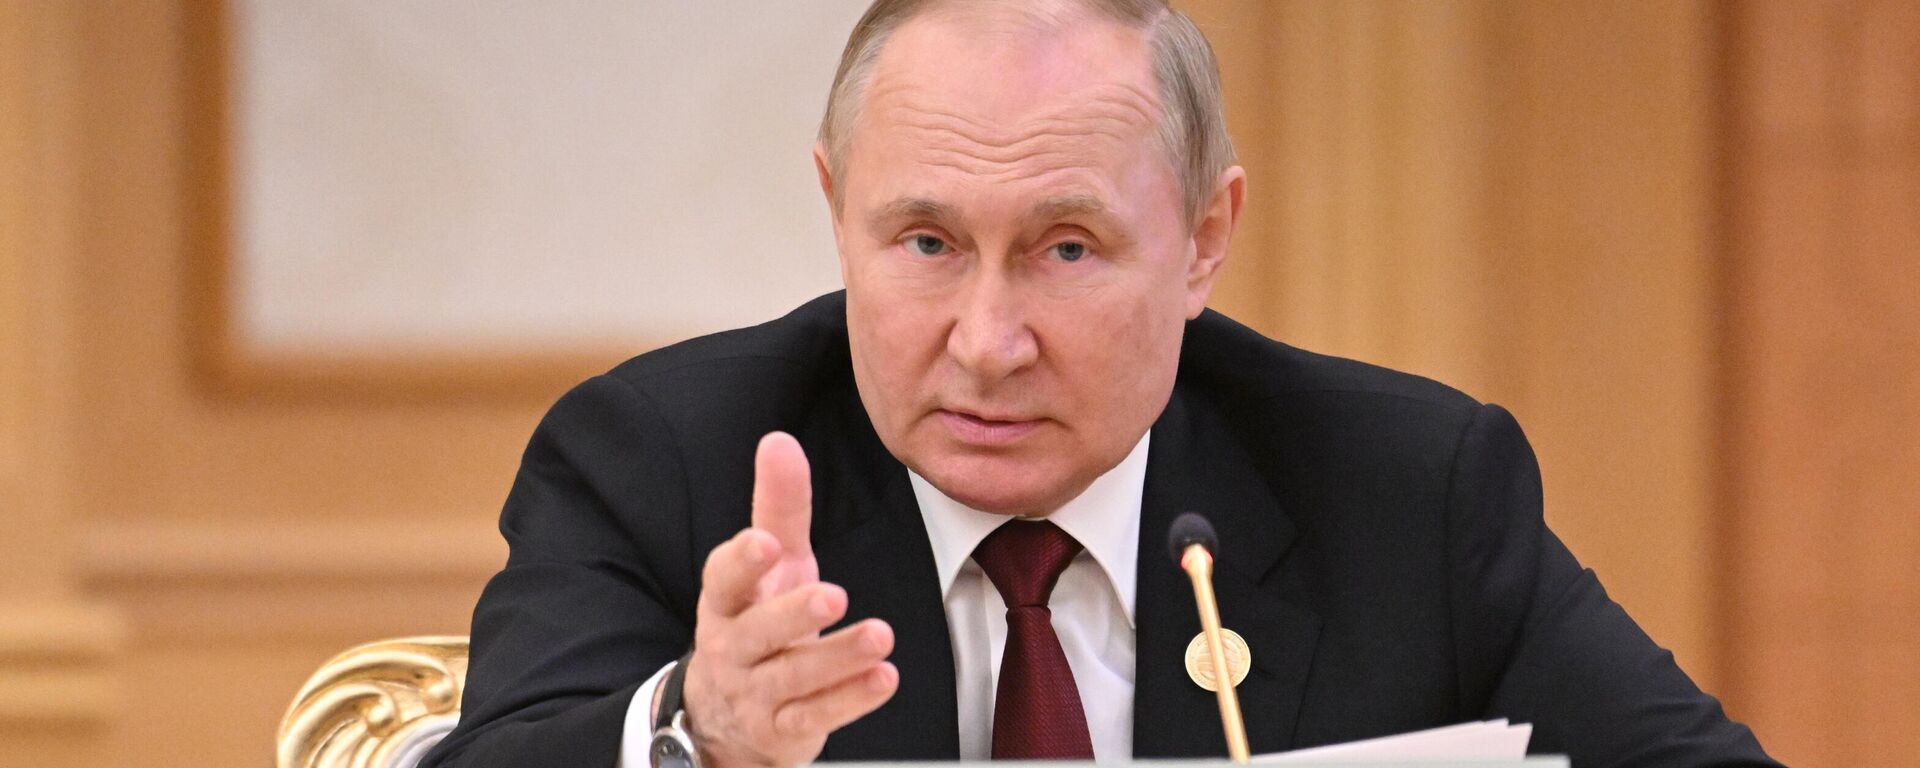 الرئيس الروسي فلاديمير بوتين خلال قمة بحر قزوين السادسة في عشق أباد، تركمنستان 29 يونيو 2022 - اسپوتنیک افغانستان  , 1920, 15.12.2022